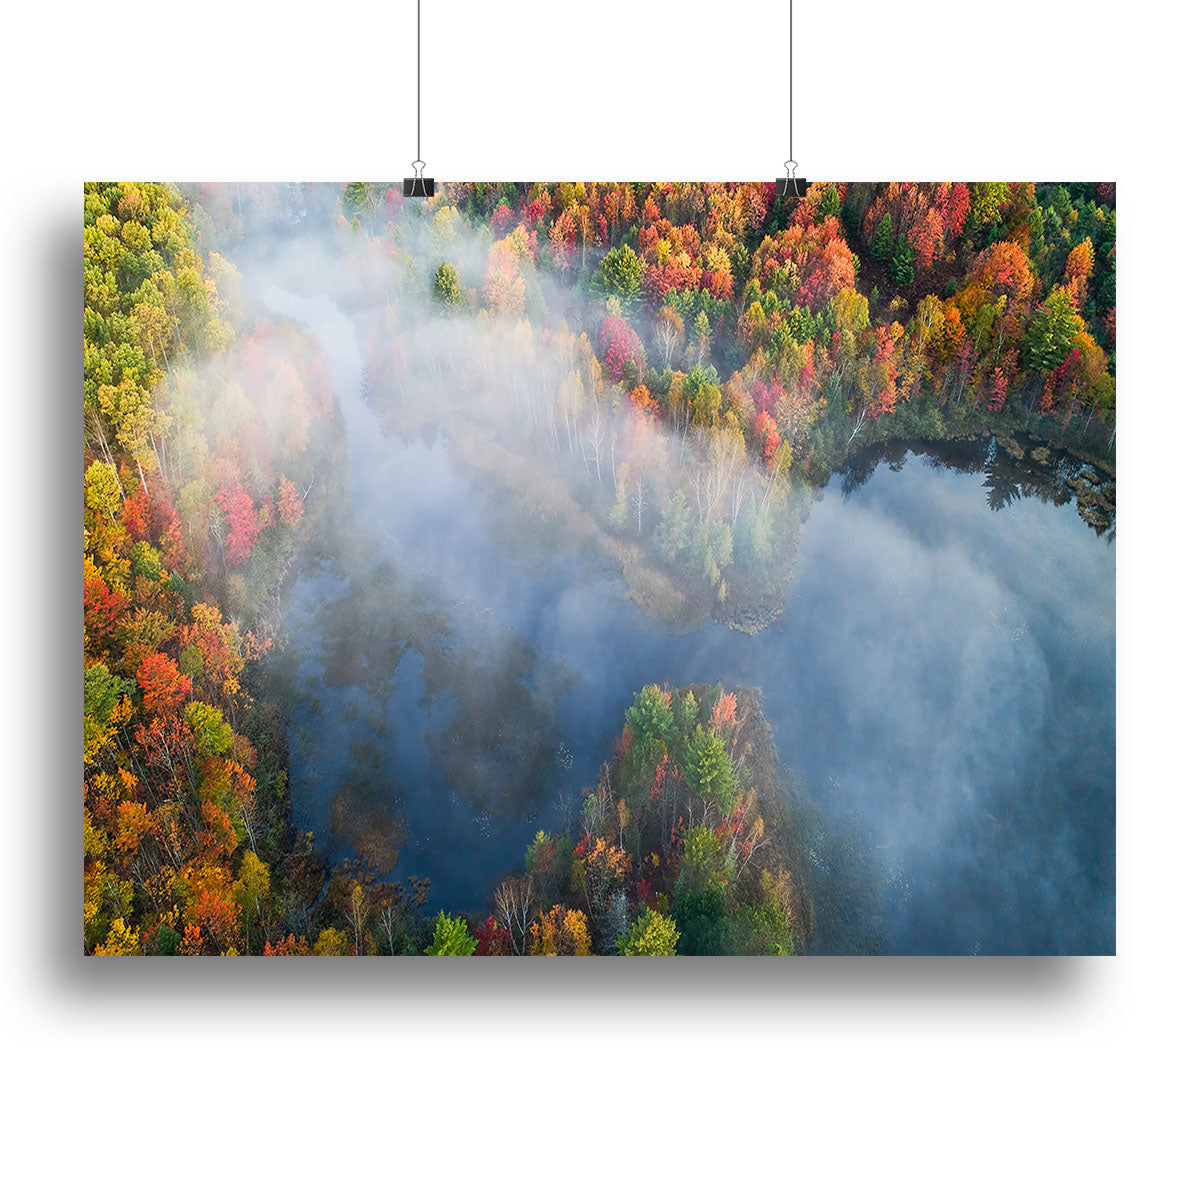 Autumn Symphony I Canvas Print or Poster - Canvas Art Rocks - 2